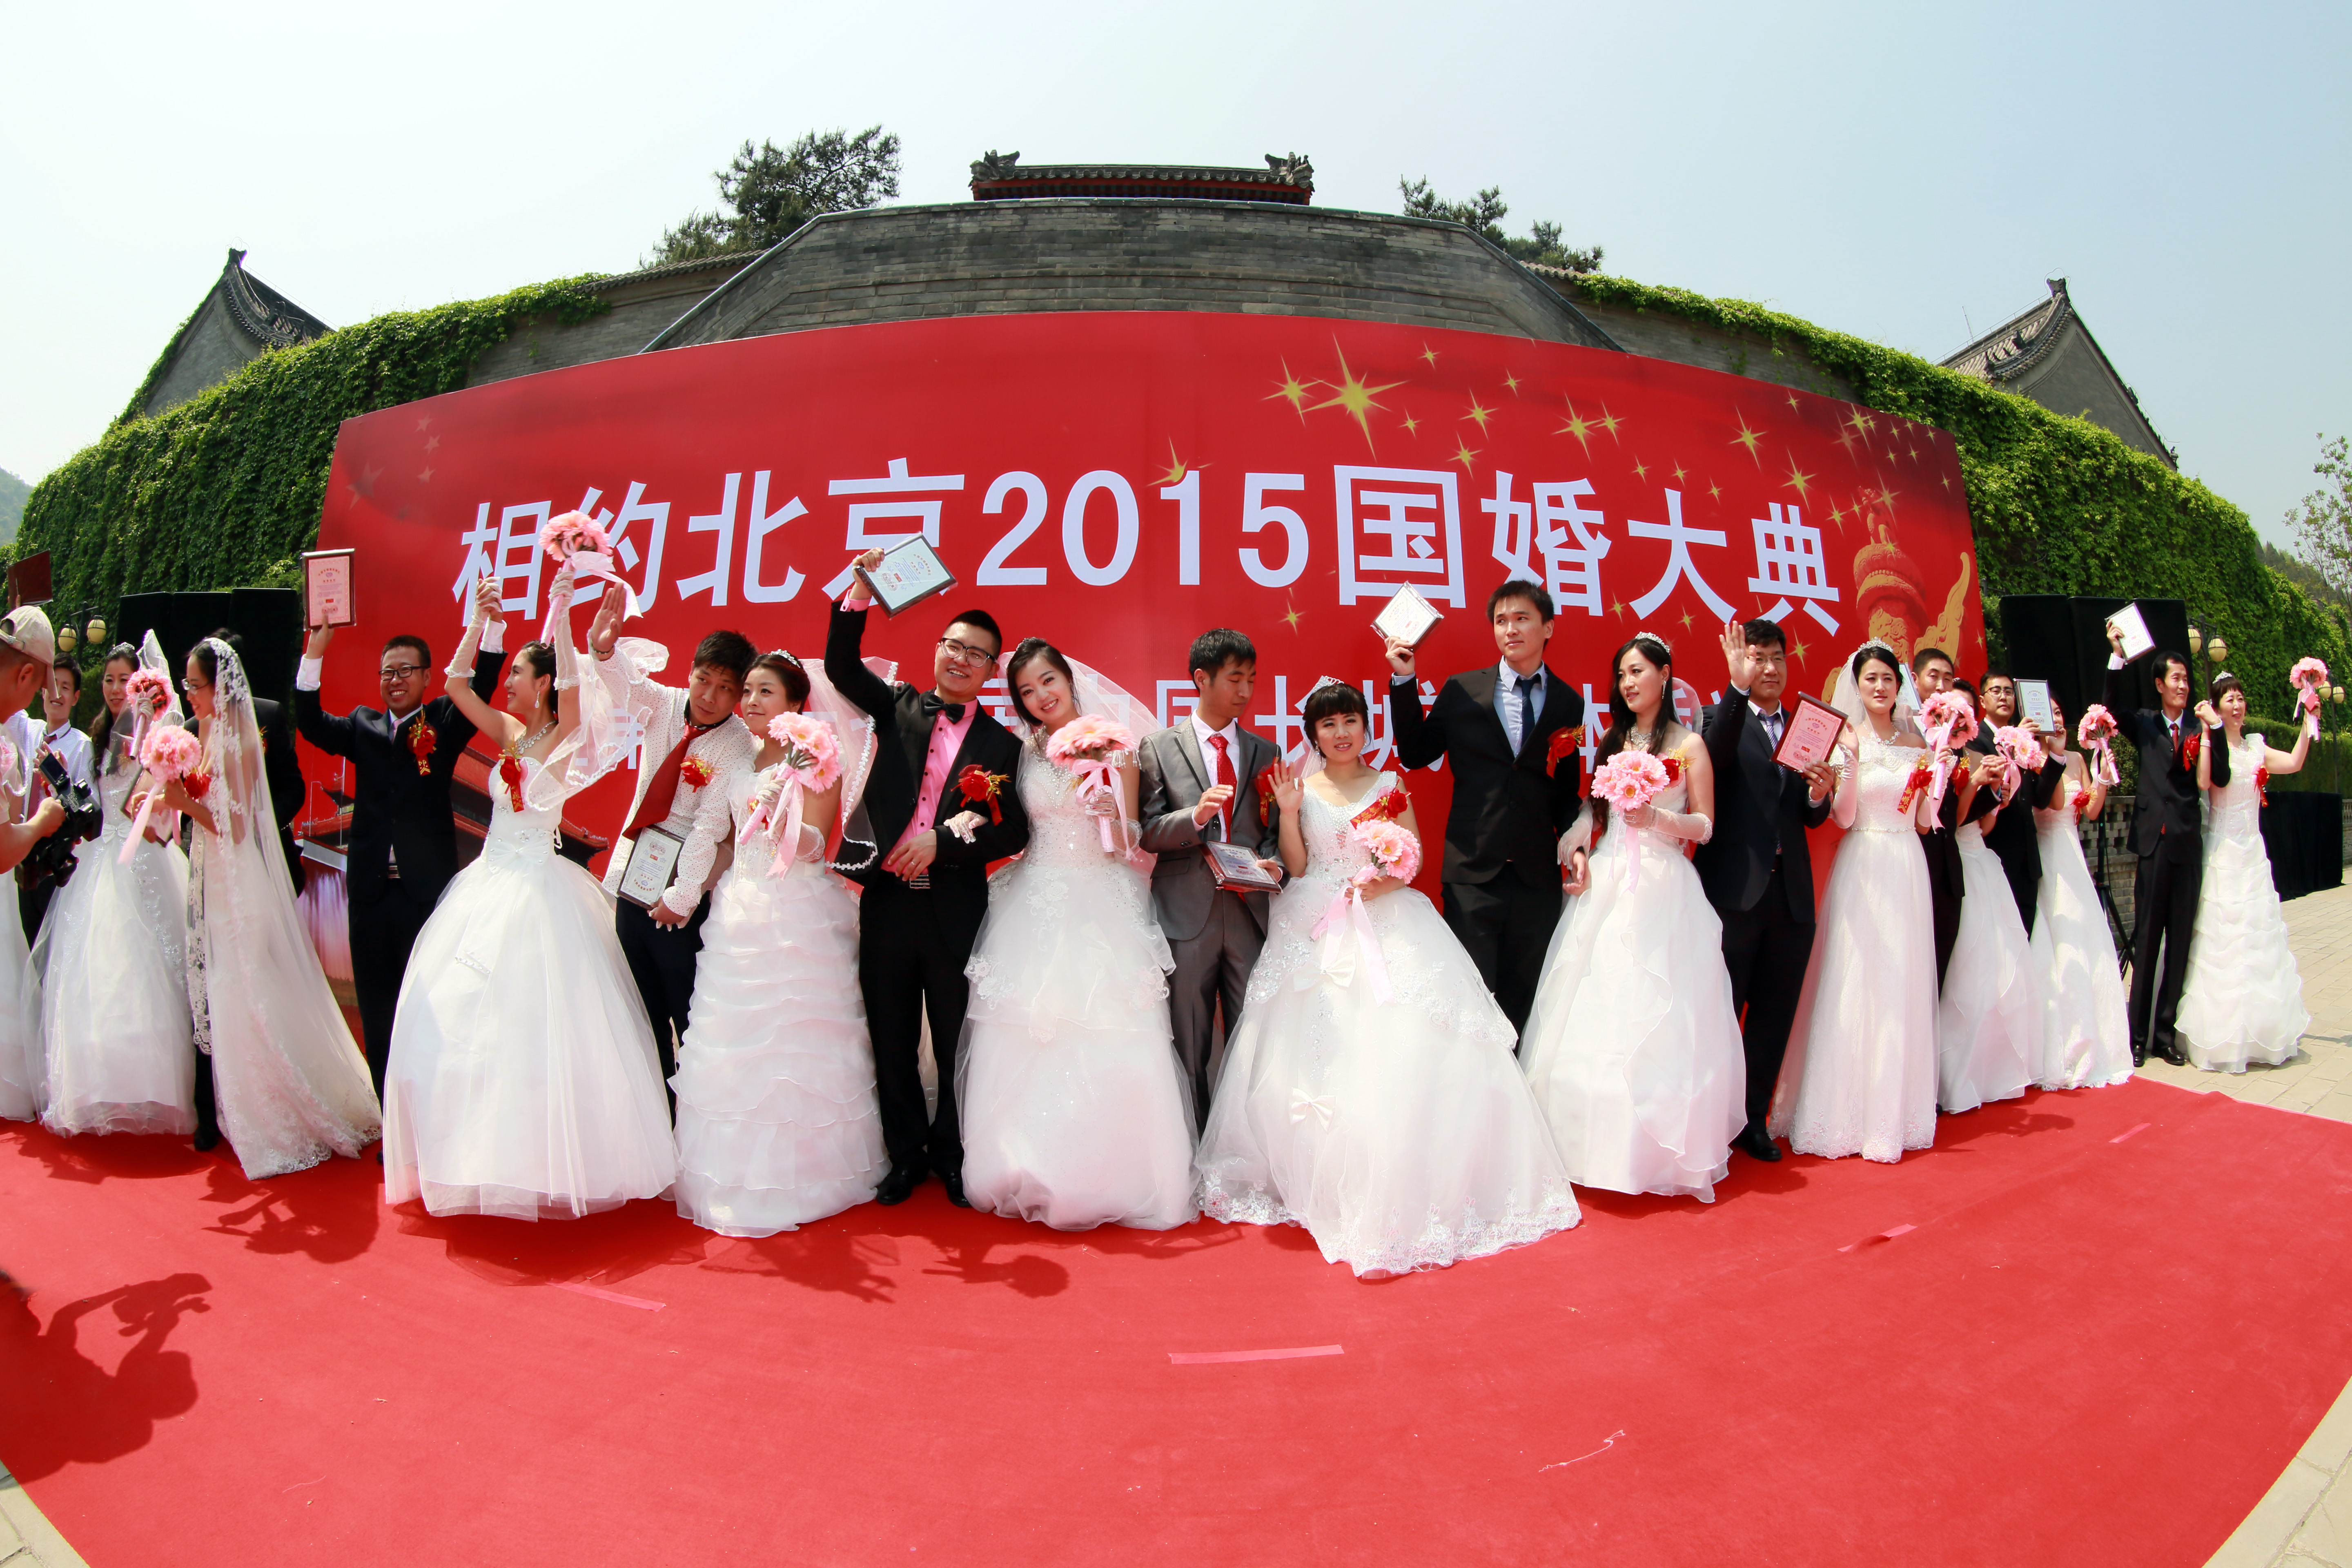 北京集体婚礼:2020年10月1日日第49届“国婚大典”集体婚礼